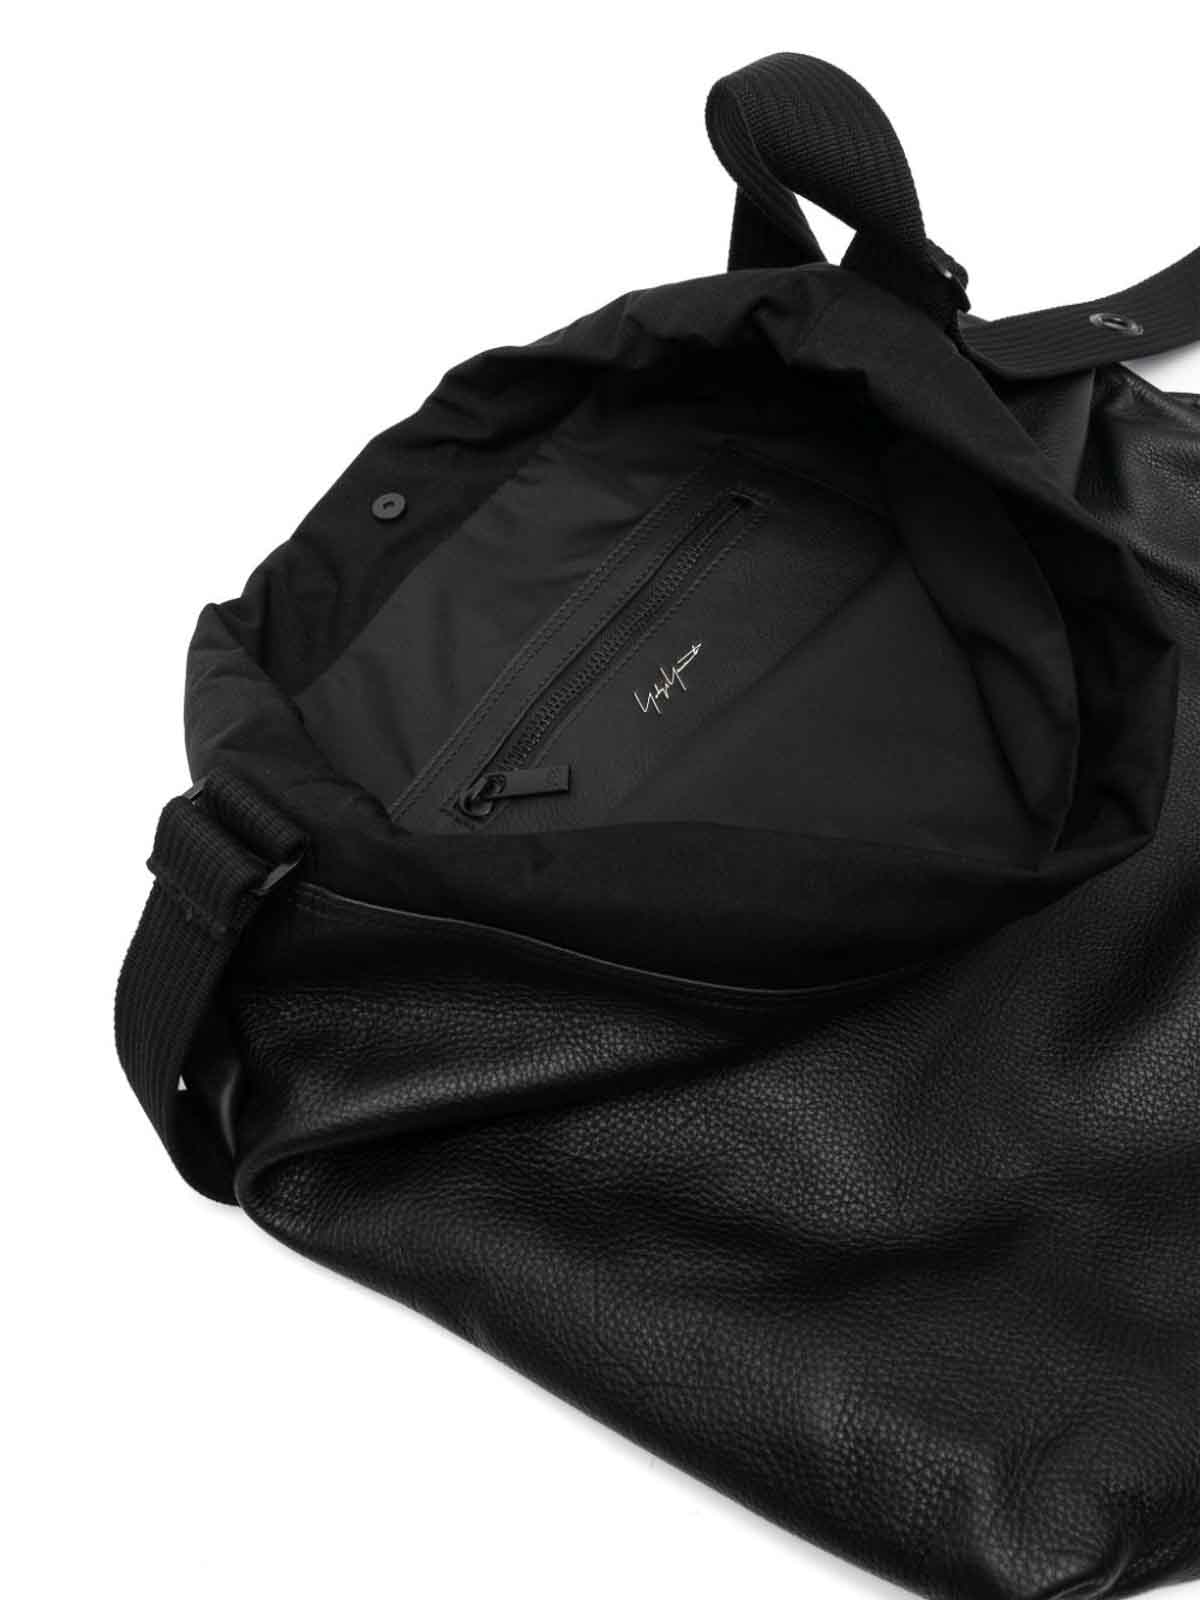 Y-3 Lux Gym Bag in Black